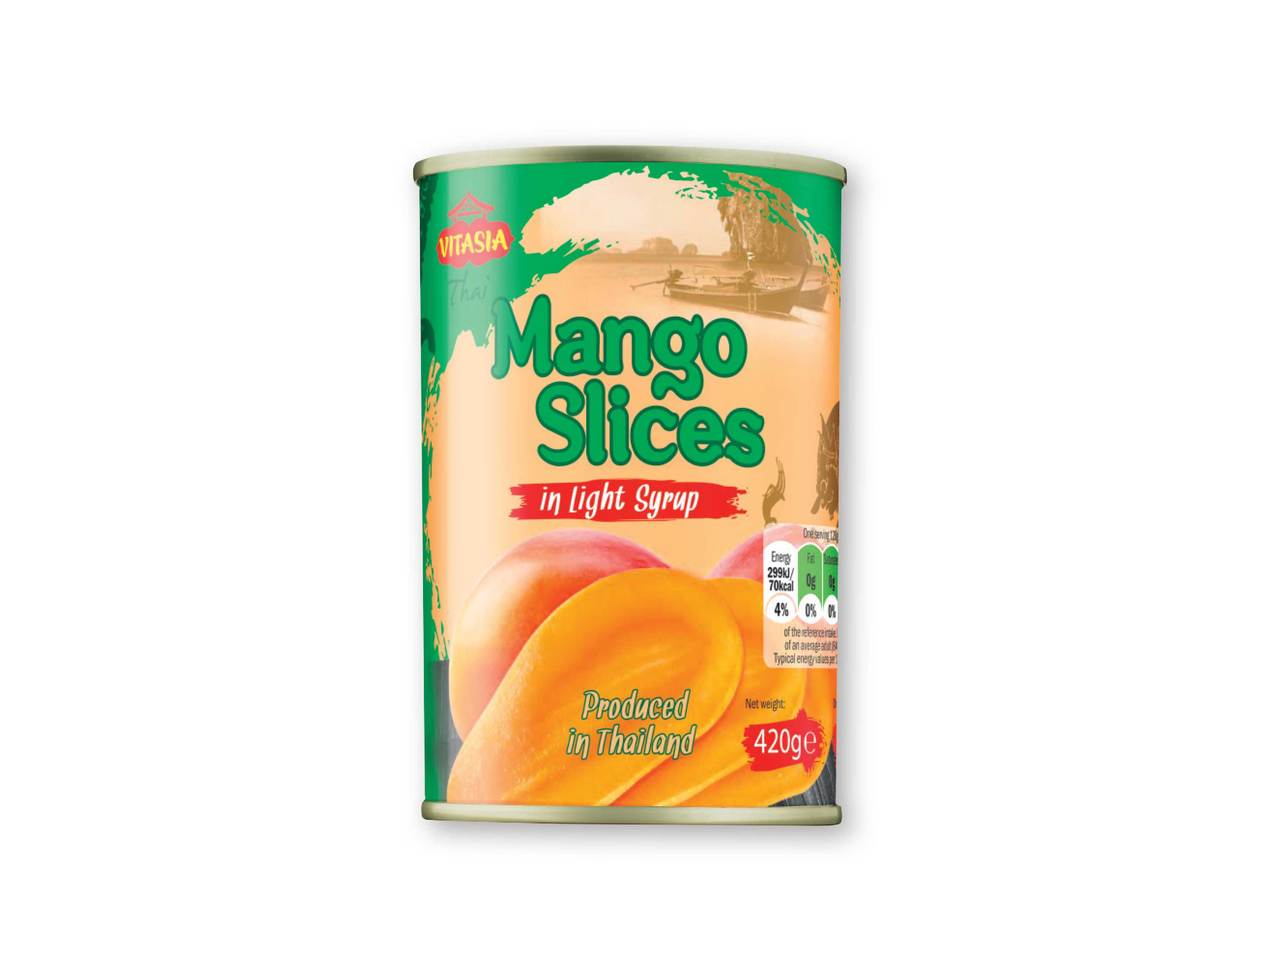 VITASIA Mango Slices